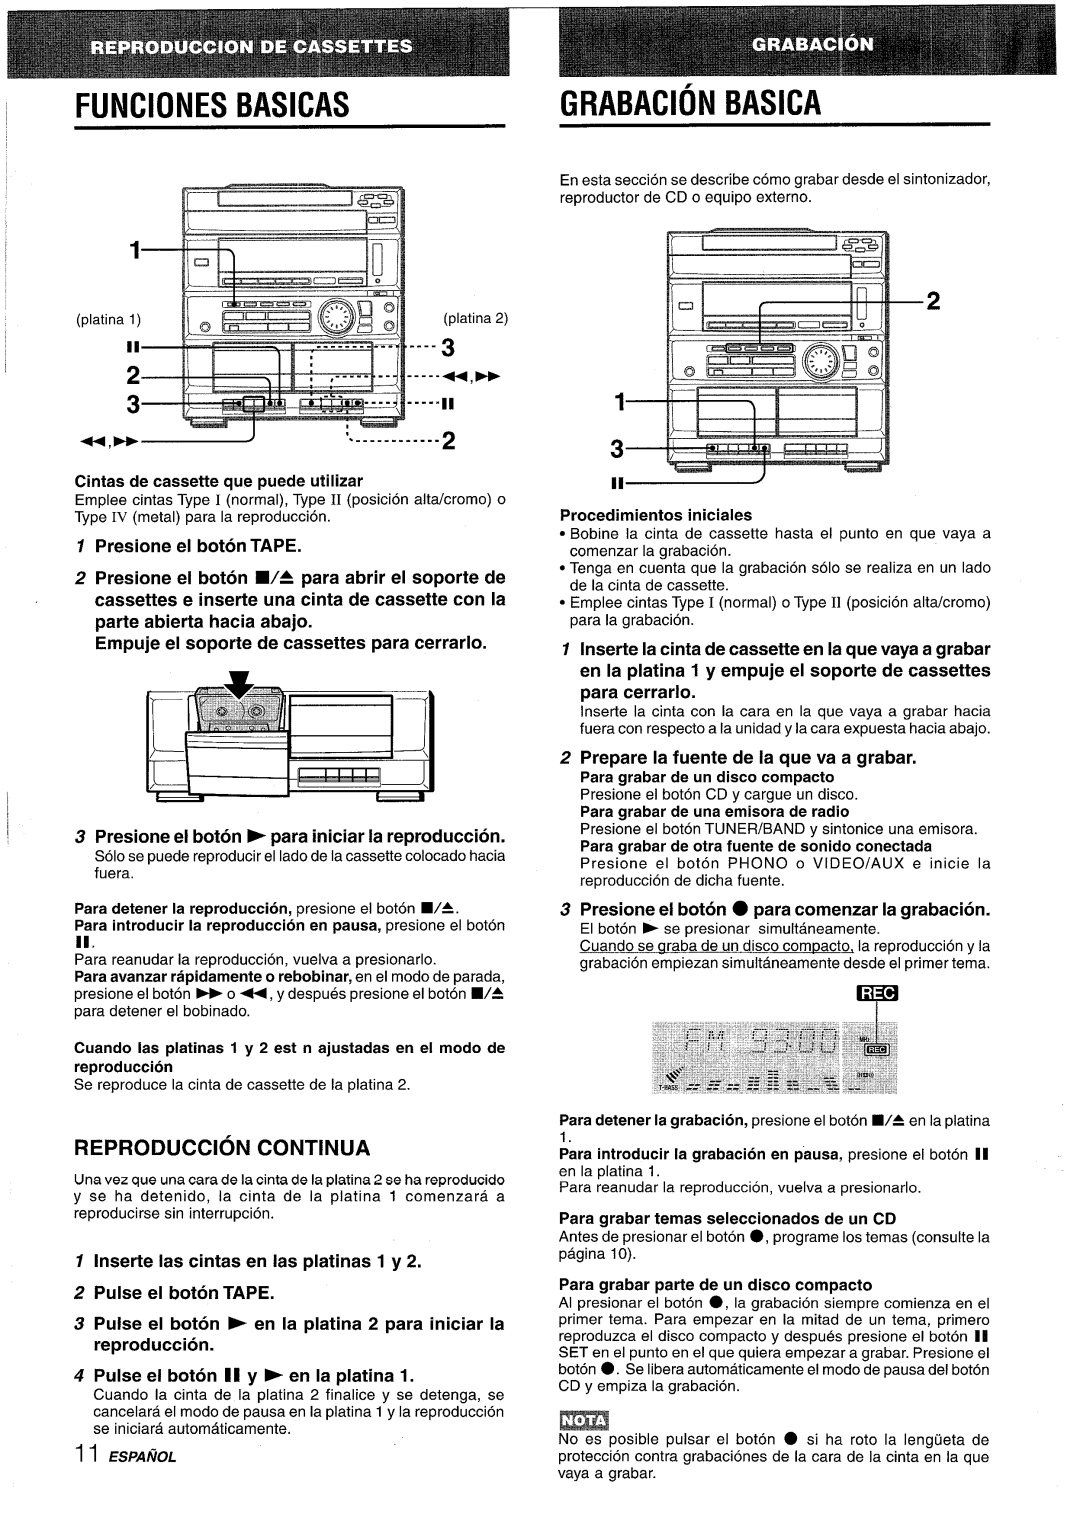 Sony CX-ZR525 FUNClONES BASICAS, Grabacion Basica, Reproduction Continua, +,~~, Cintas de cassette que puede utilizar 